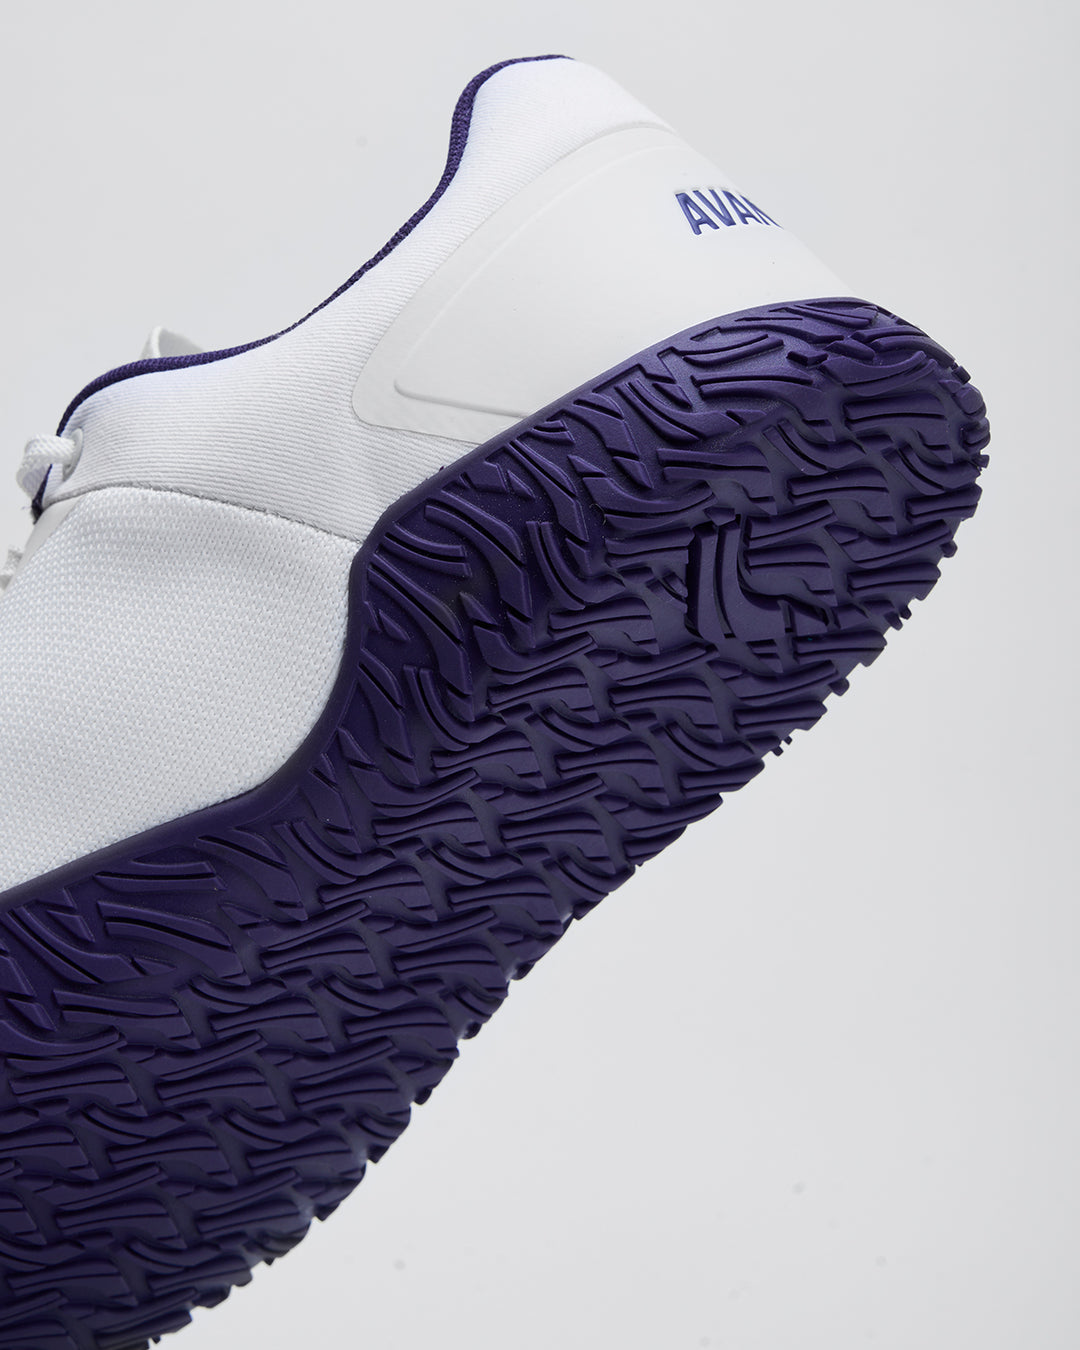 Avancus Apex 1.5 Power Shoes White/Purple FINAL SALE